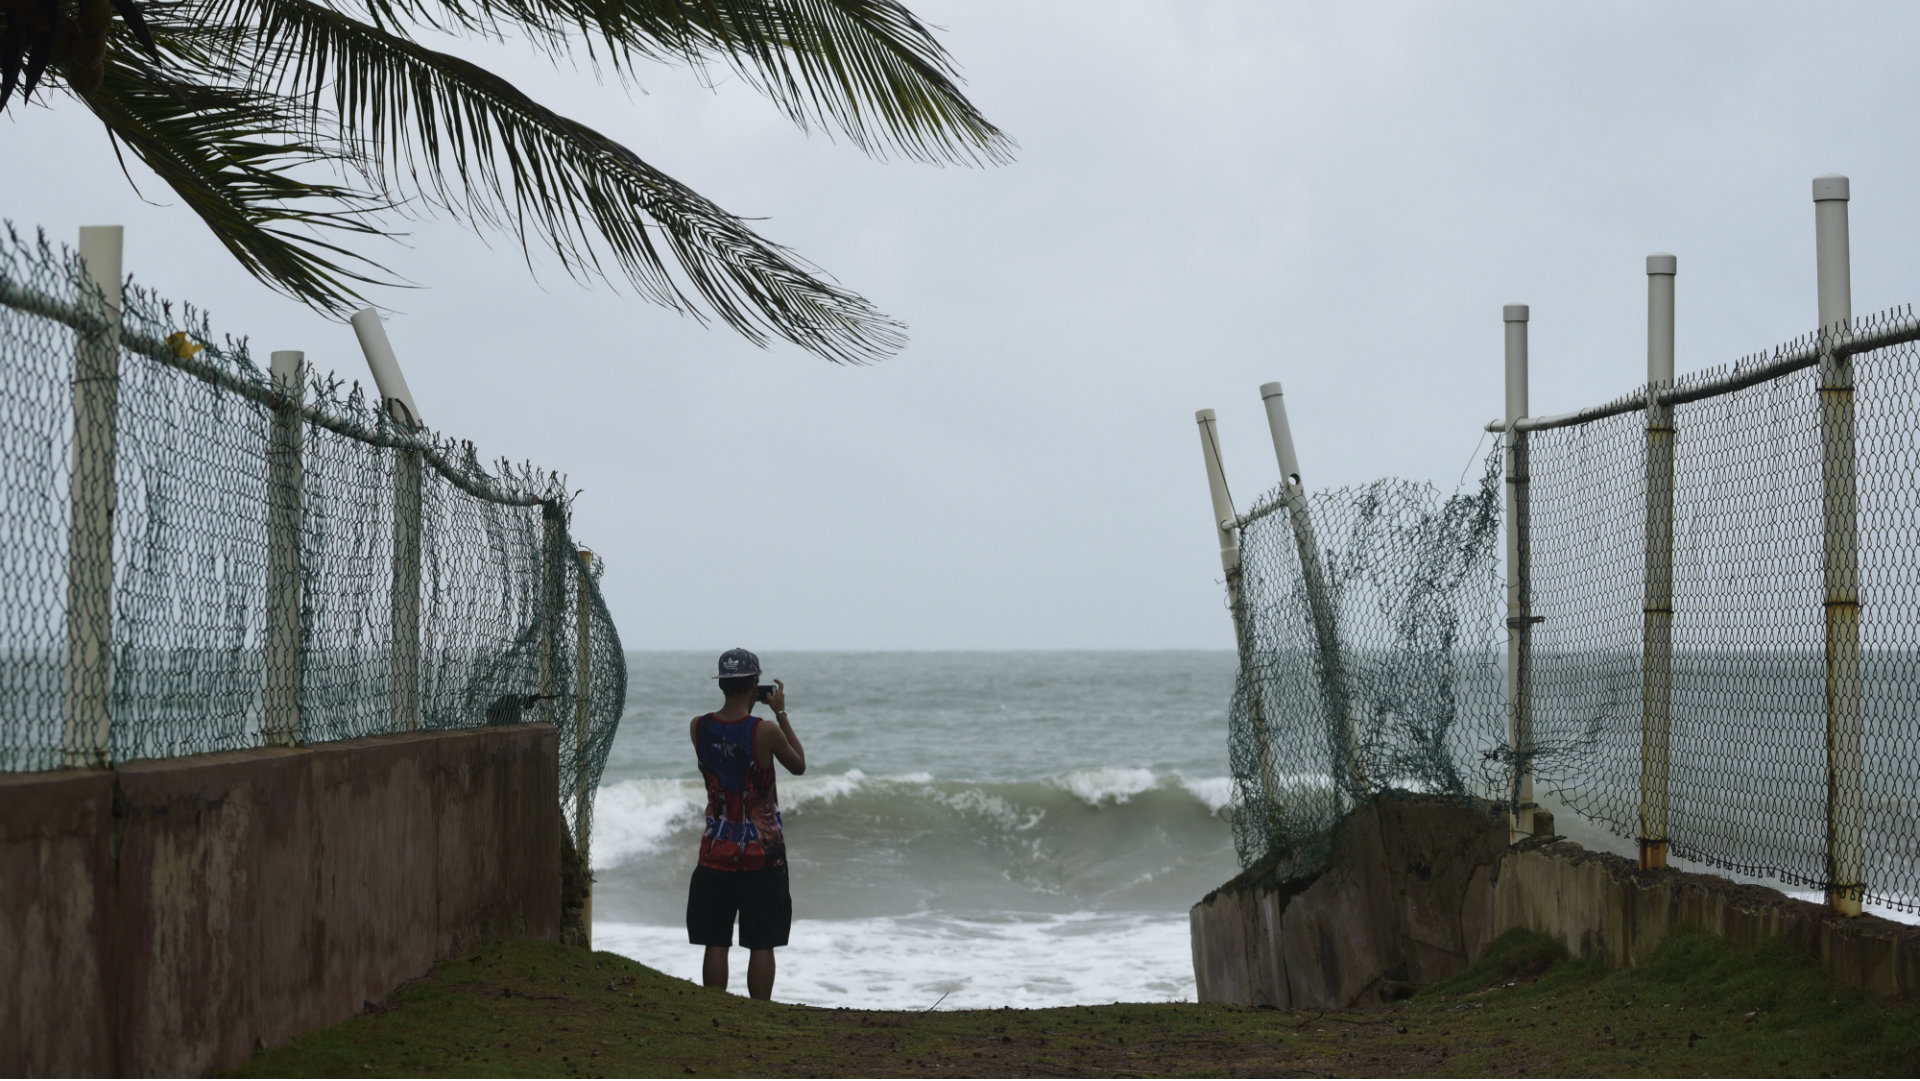 Las tormentas Katia y José se suman a Irma como huracanes en el Atlántico